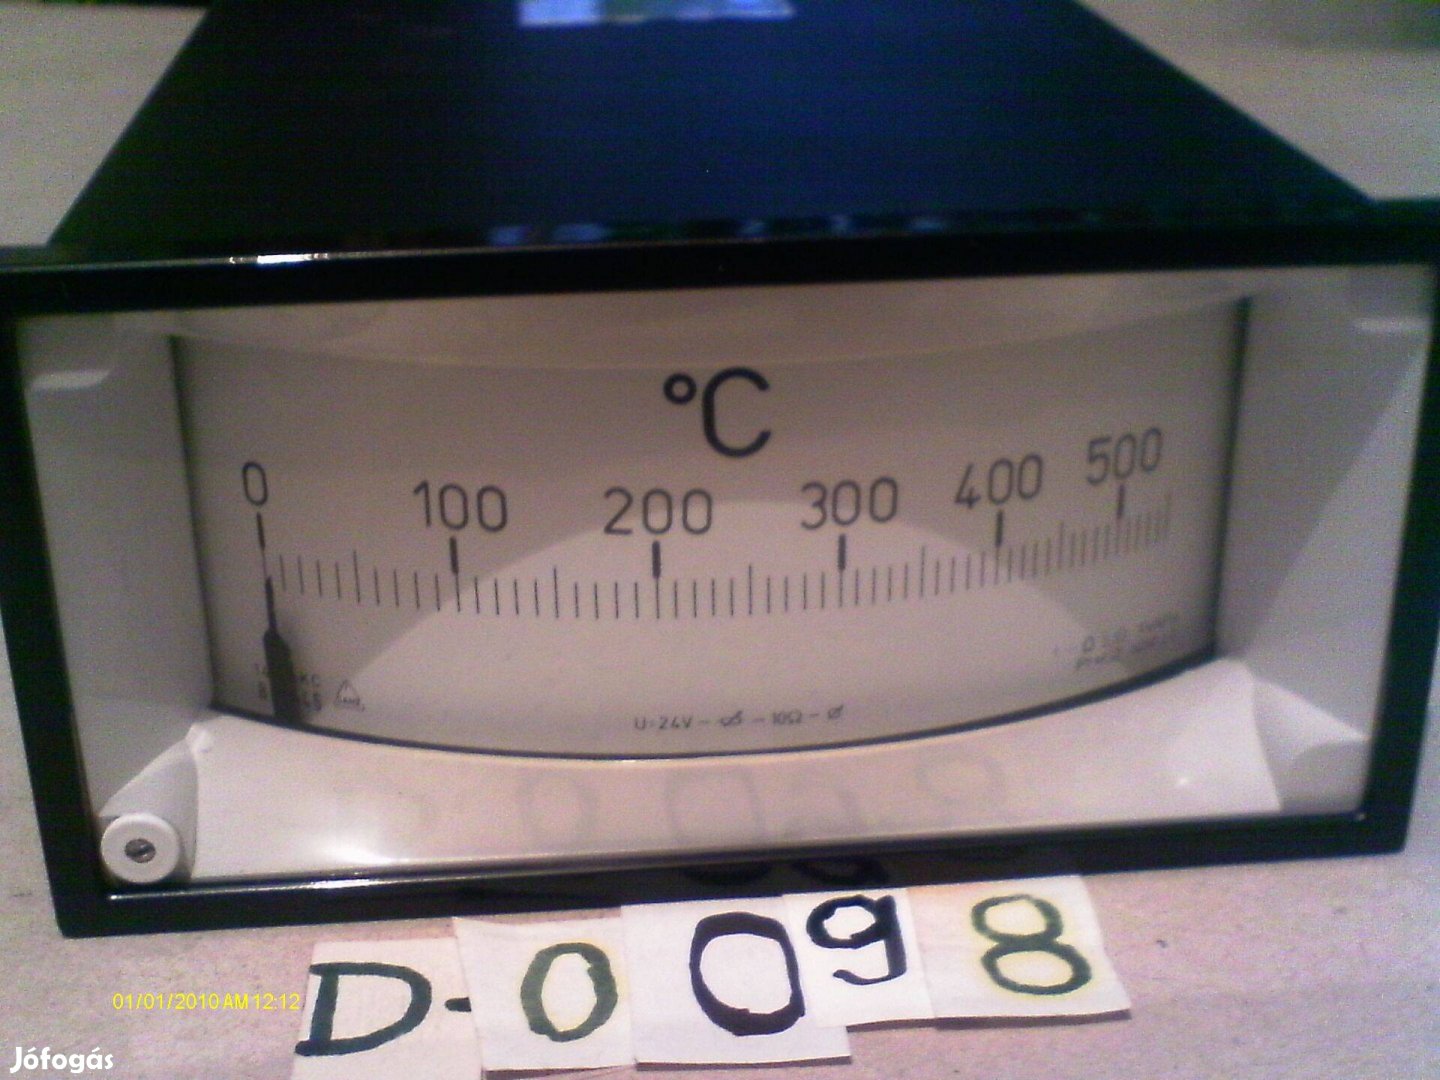 Hőmérsékletmérő táblaműszer eladó. (D-0098)